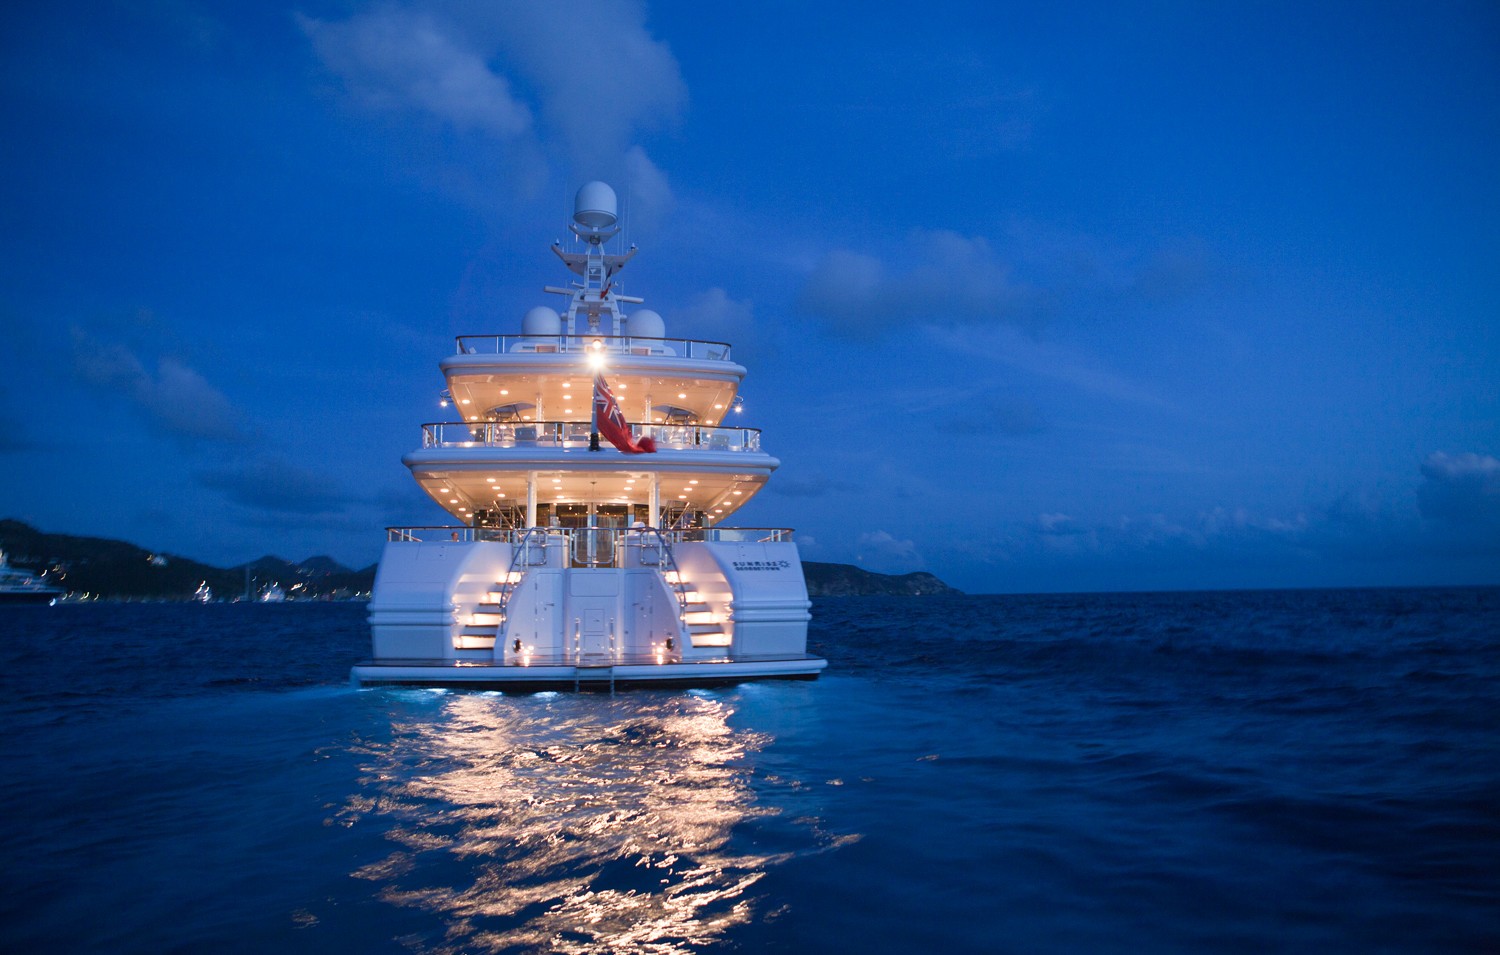 Evening: Yacht SUNRISE's Aft Image